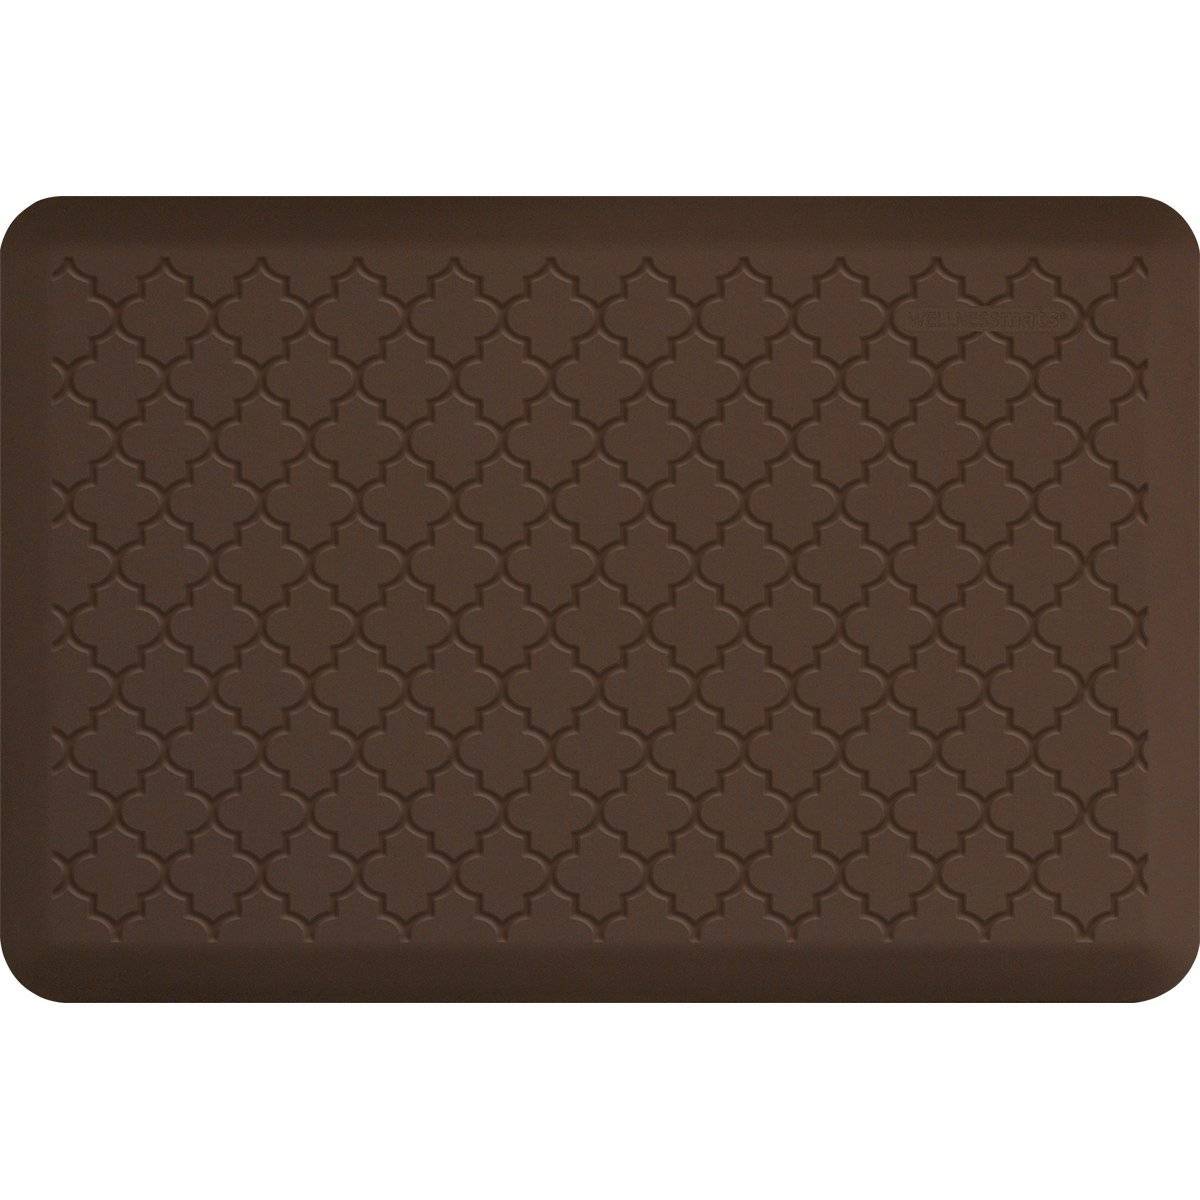 WellnessMats Trellis Motif 3' X 2' MT32WMRBRN, Brown A popular floor mat with elegant design. A kitchen mat that gives padded support.